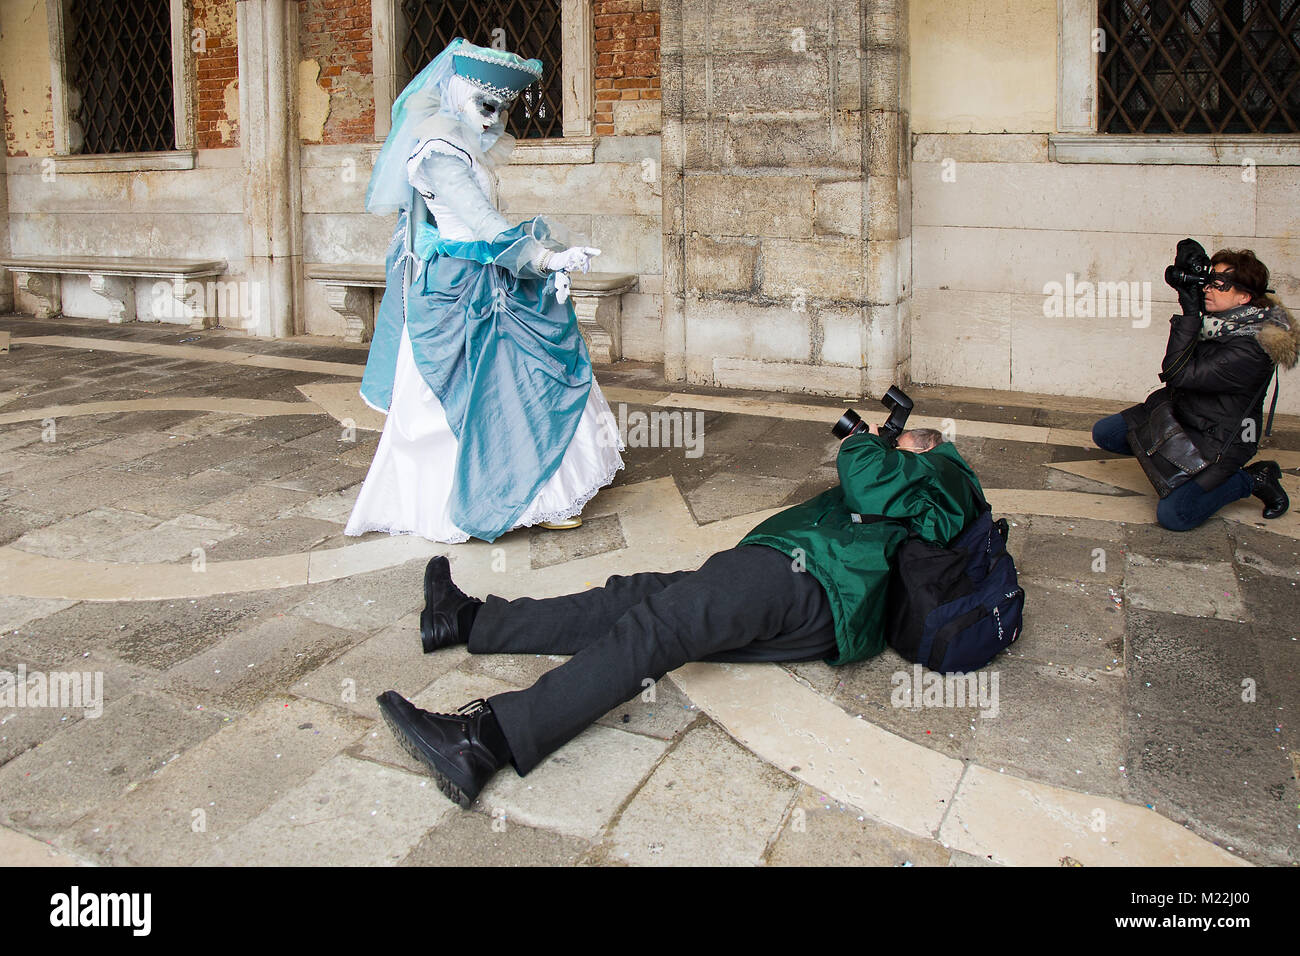 Carnaval de Venecia - el fotógrafo toma fotografías de máscara veneciana tumbado en el suelo con cámara DSLR, la Plaza de San Marcos en Venecia. Foto de stock